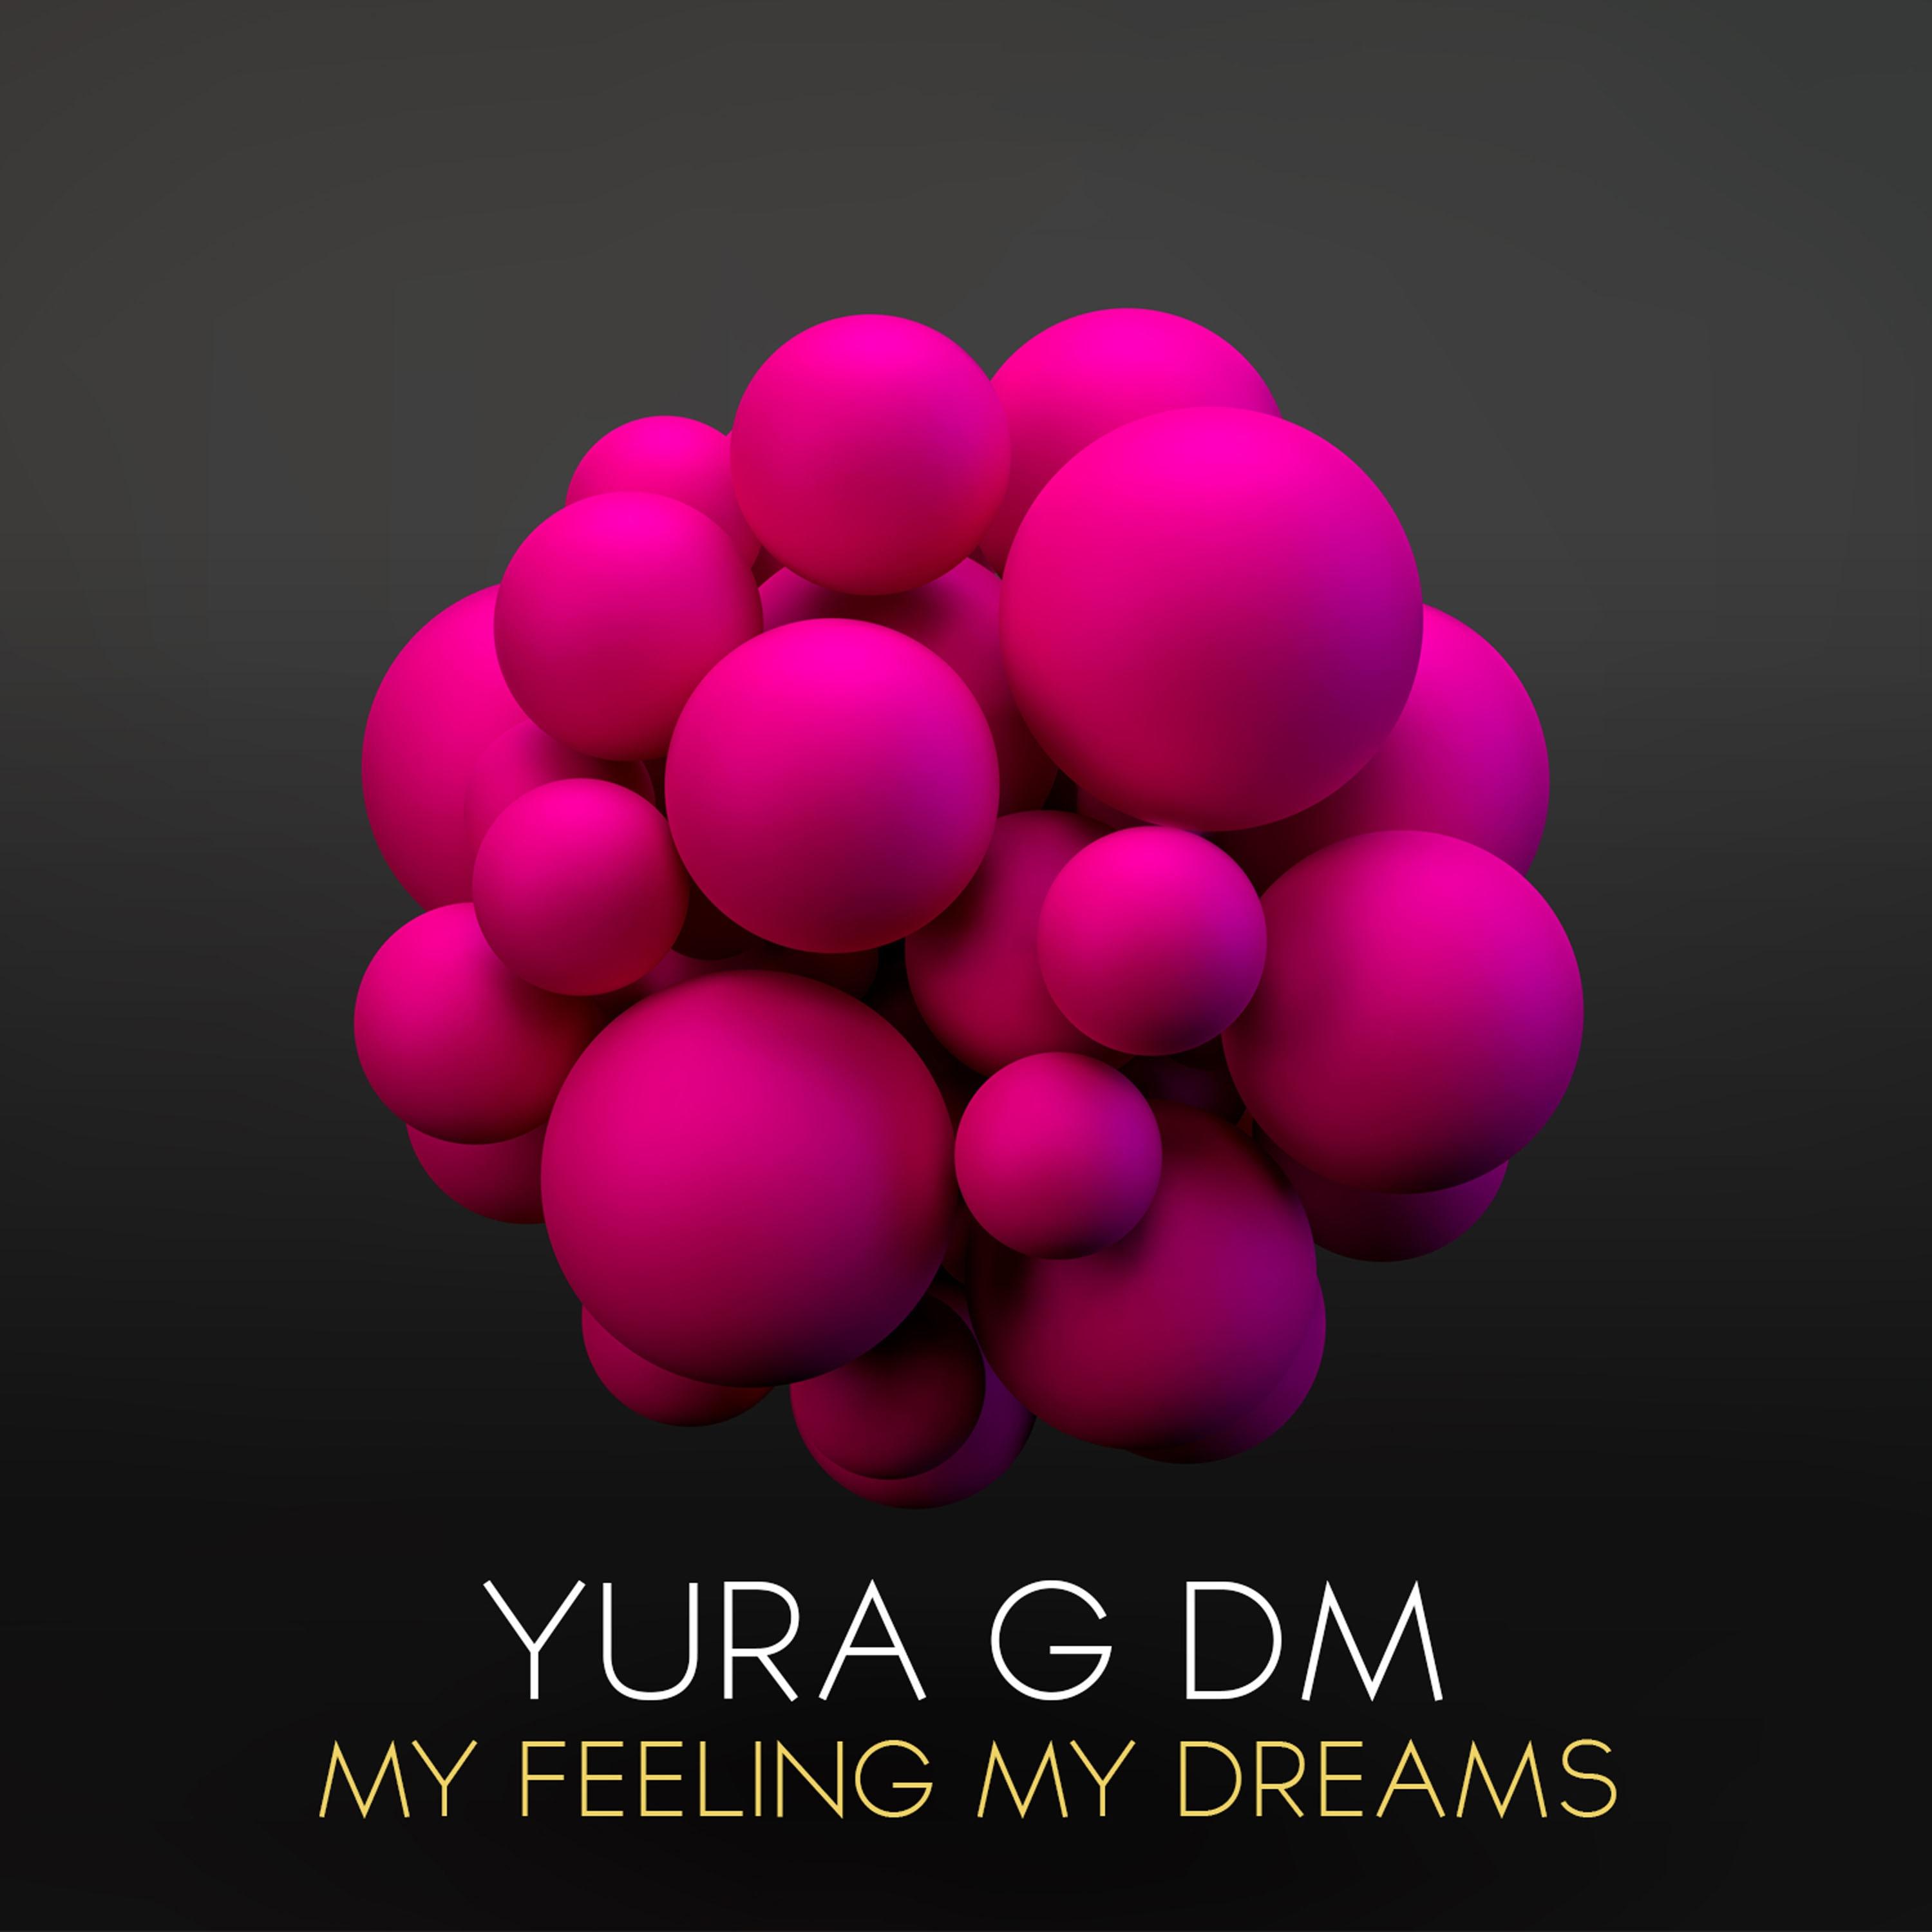 Yura G DM - Celestial World (Original Mix)